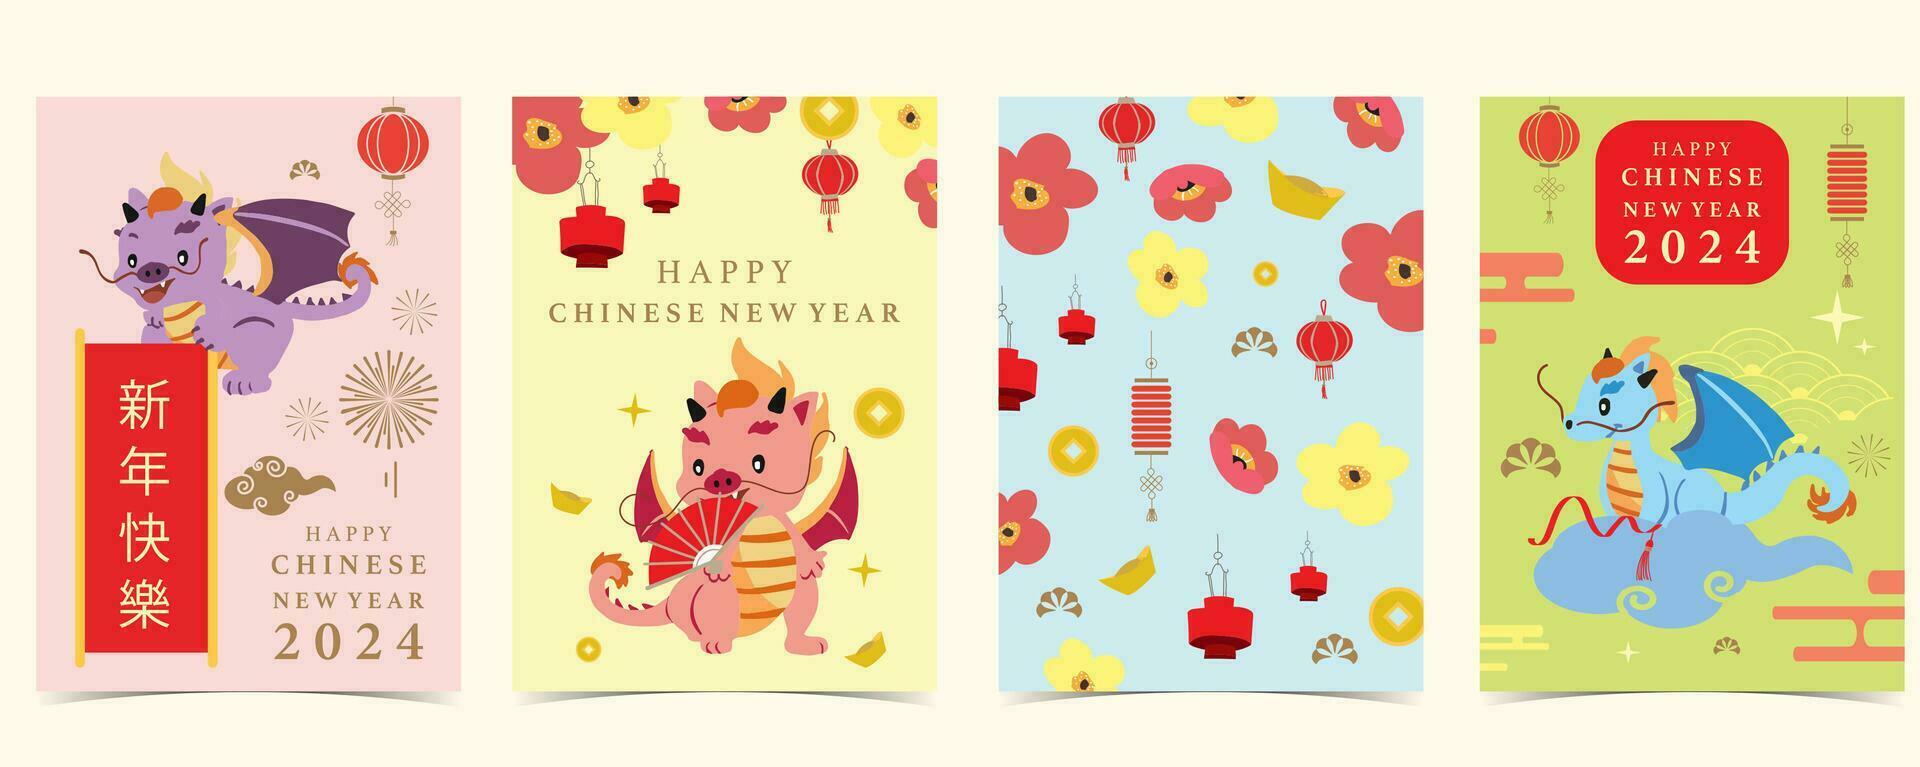 söt kinesisk ny år bakgrund med lykta,drake.redigerbar vektor illustration för unge vykort,a4 storlek